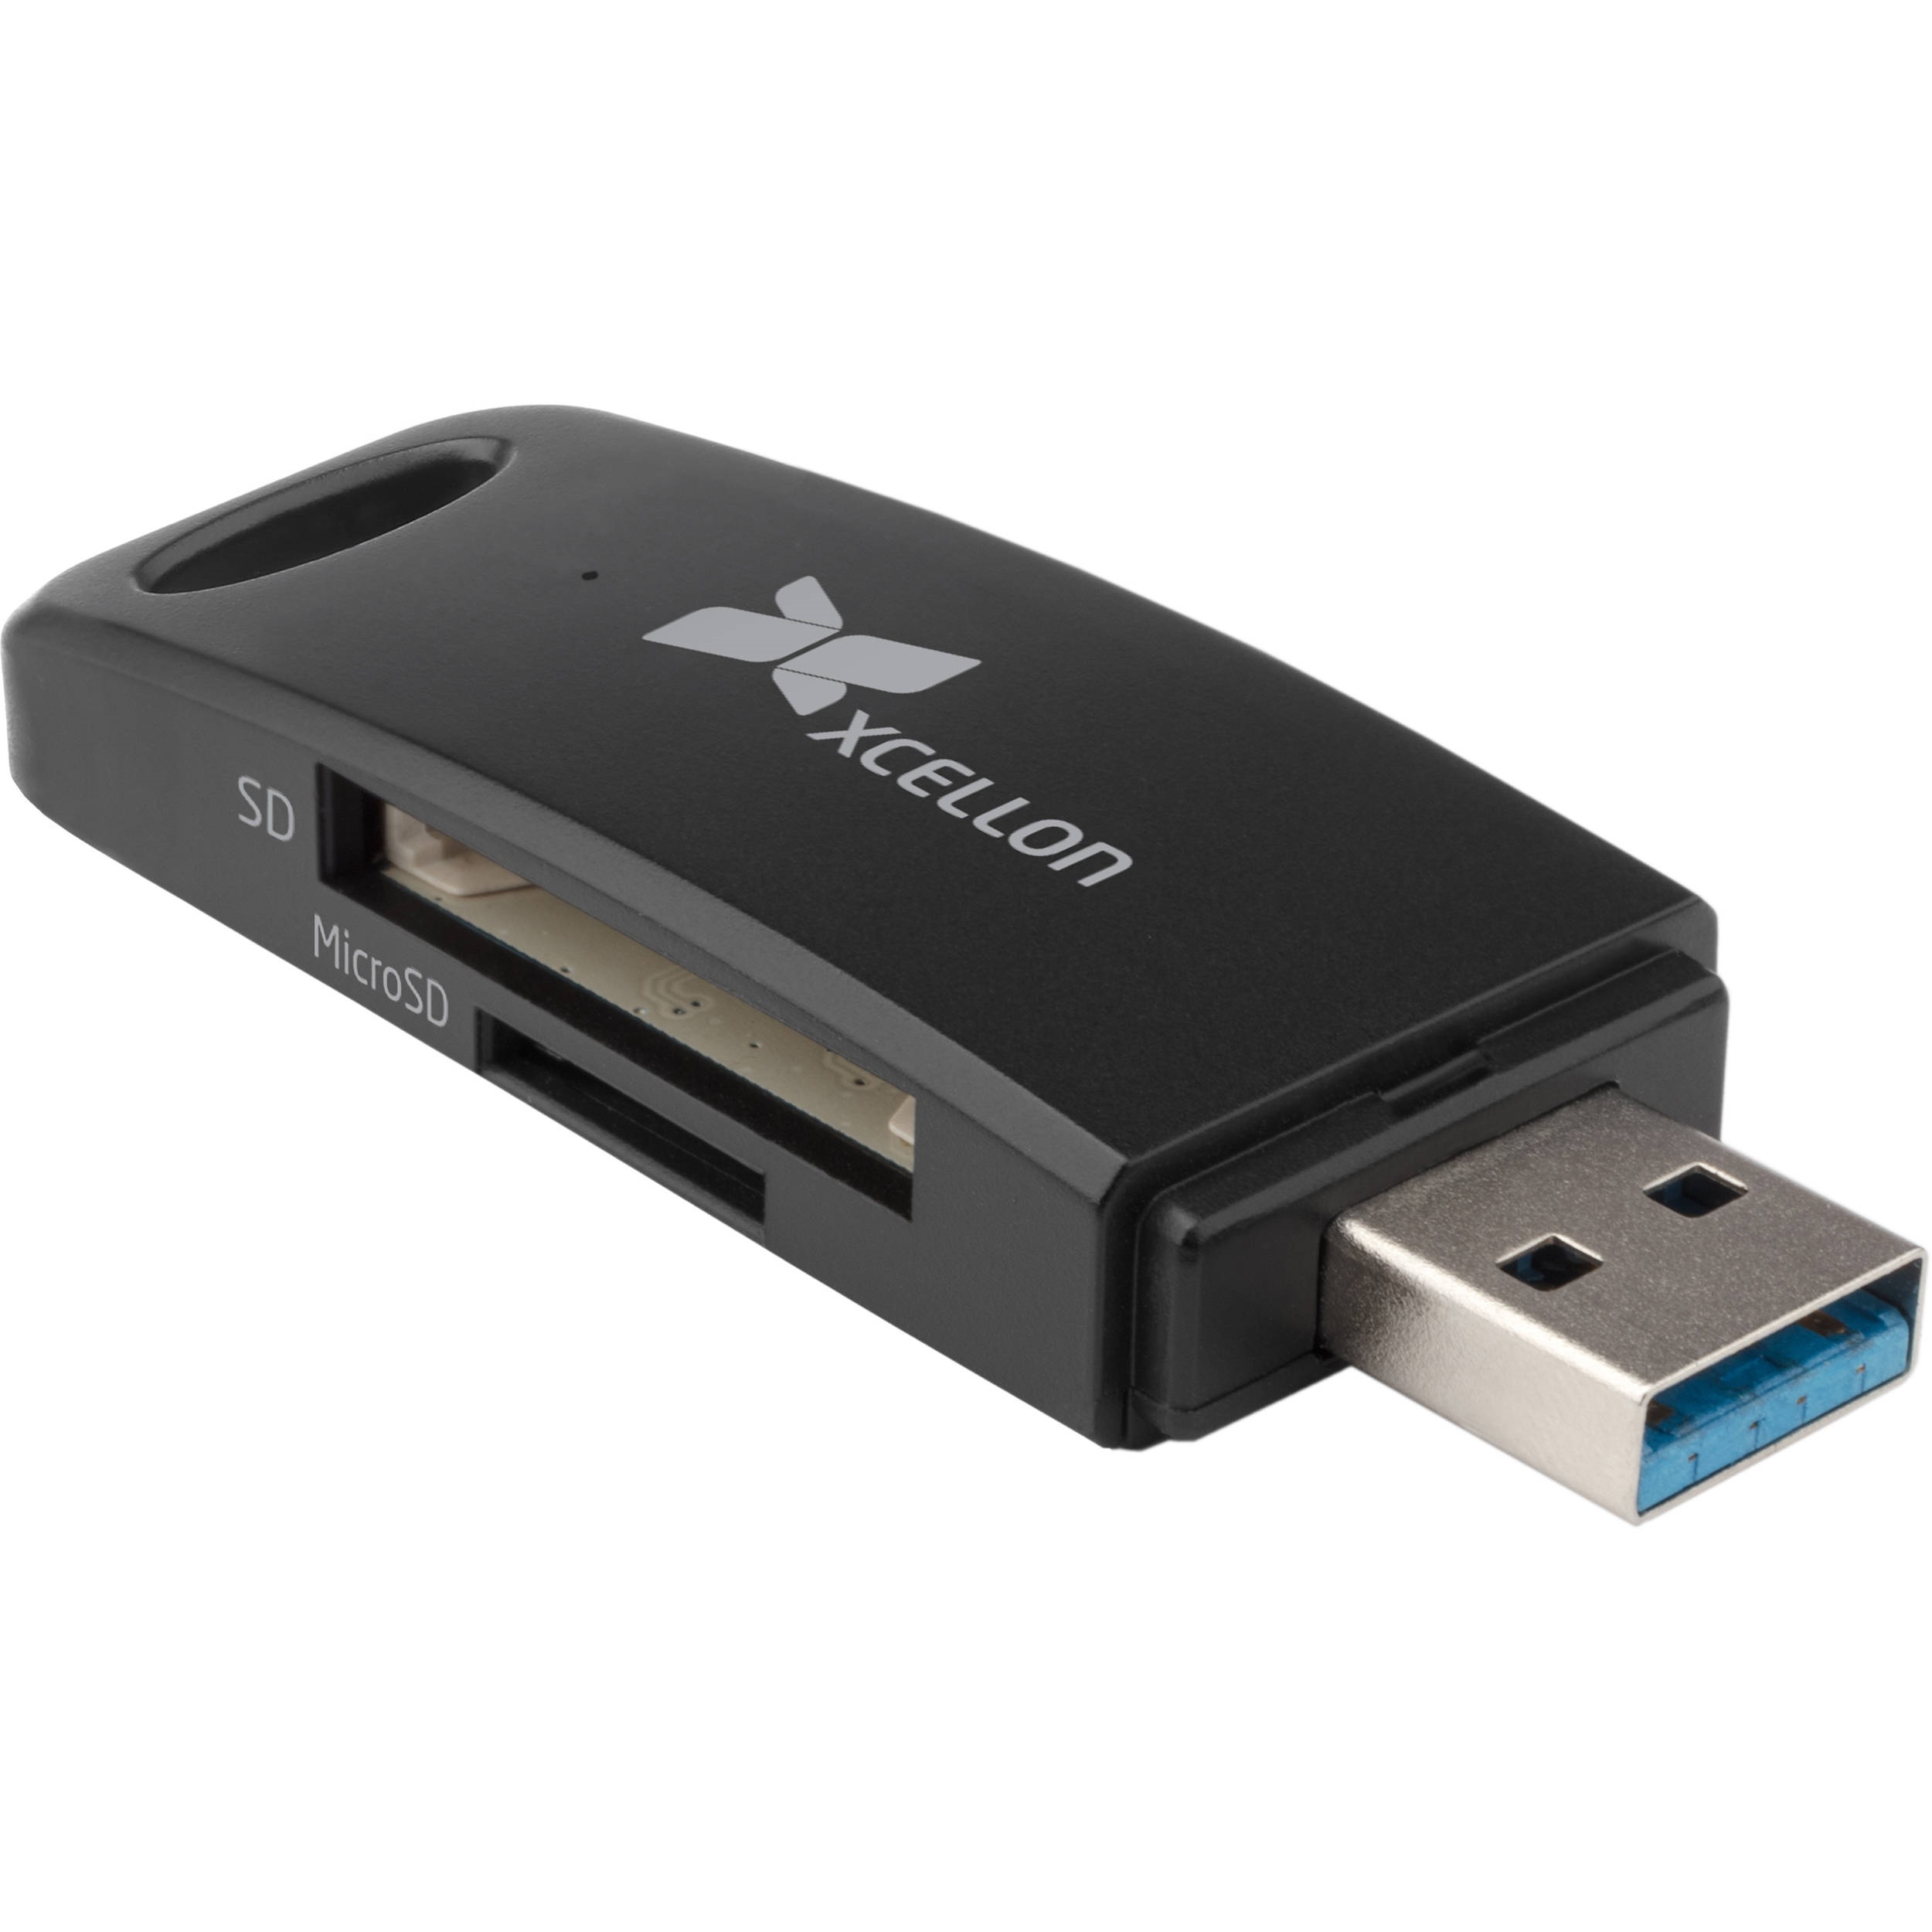 Xcellon Portable USB 3.0 Card Reader